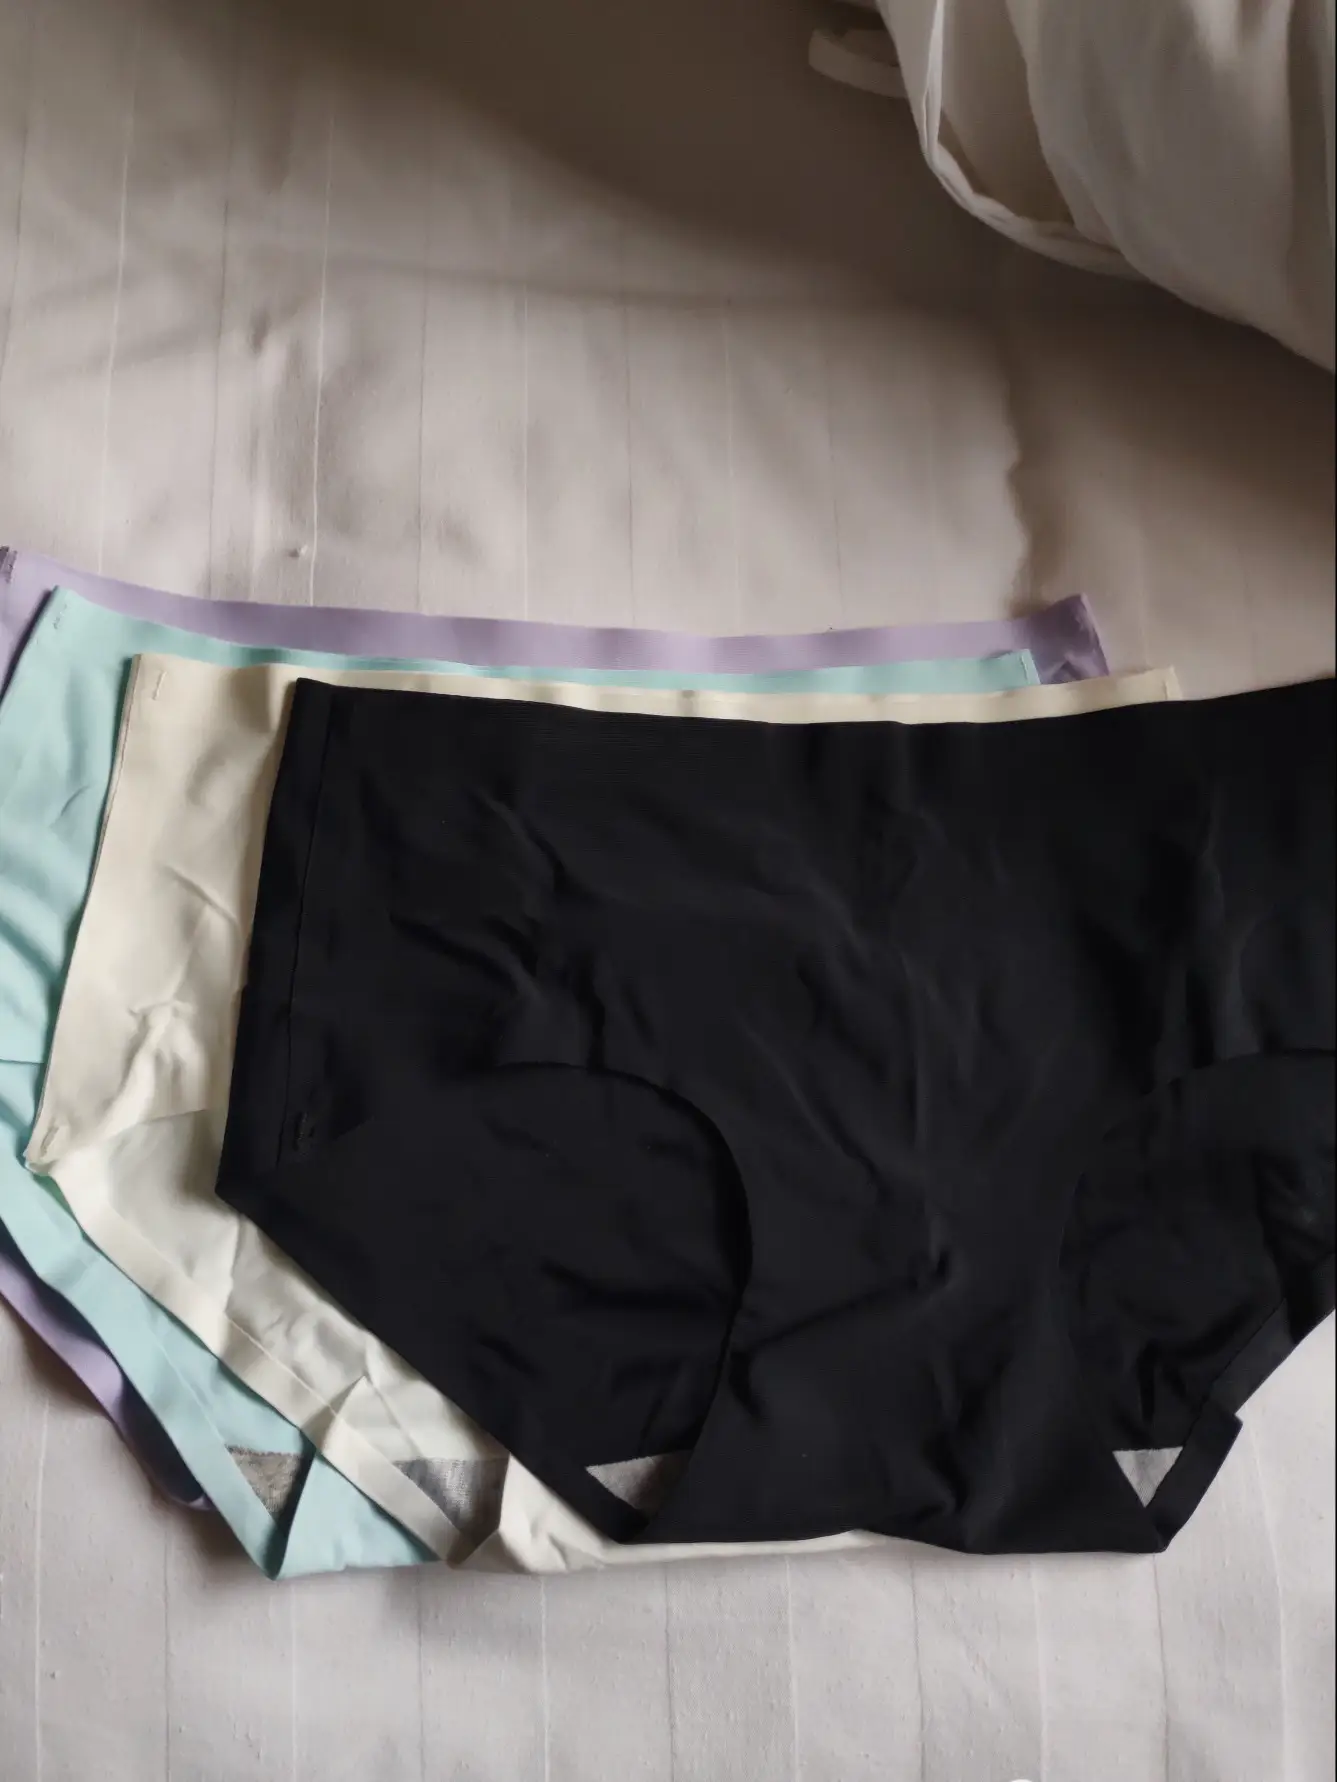 BEST* seamless undies from TAOBAO! Bye VPL~